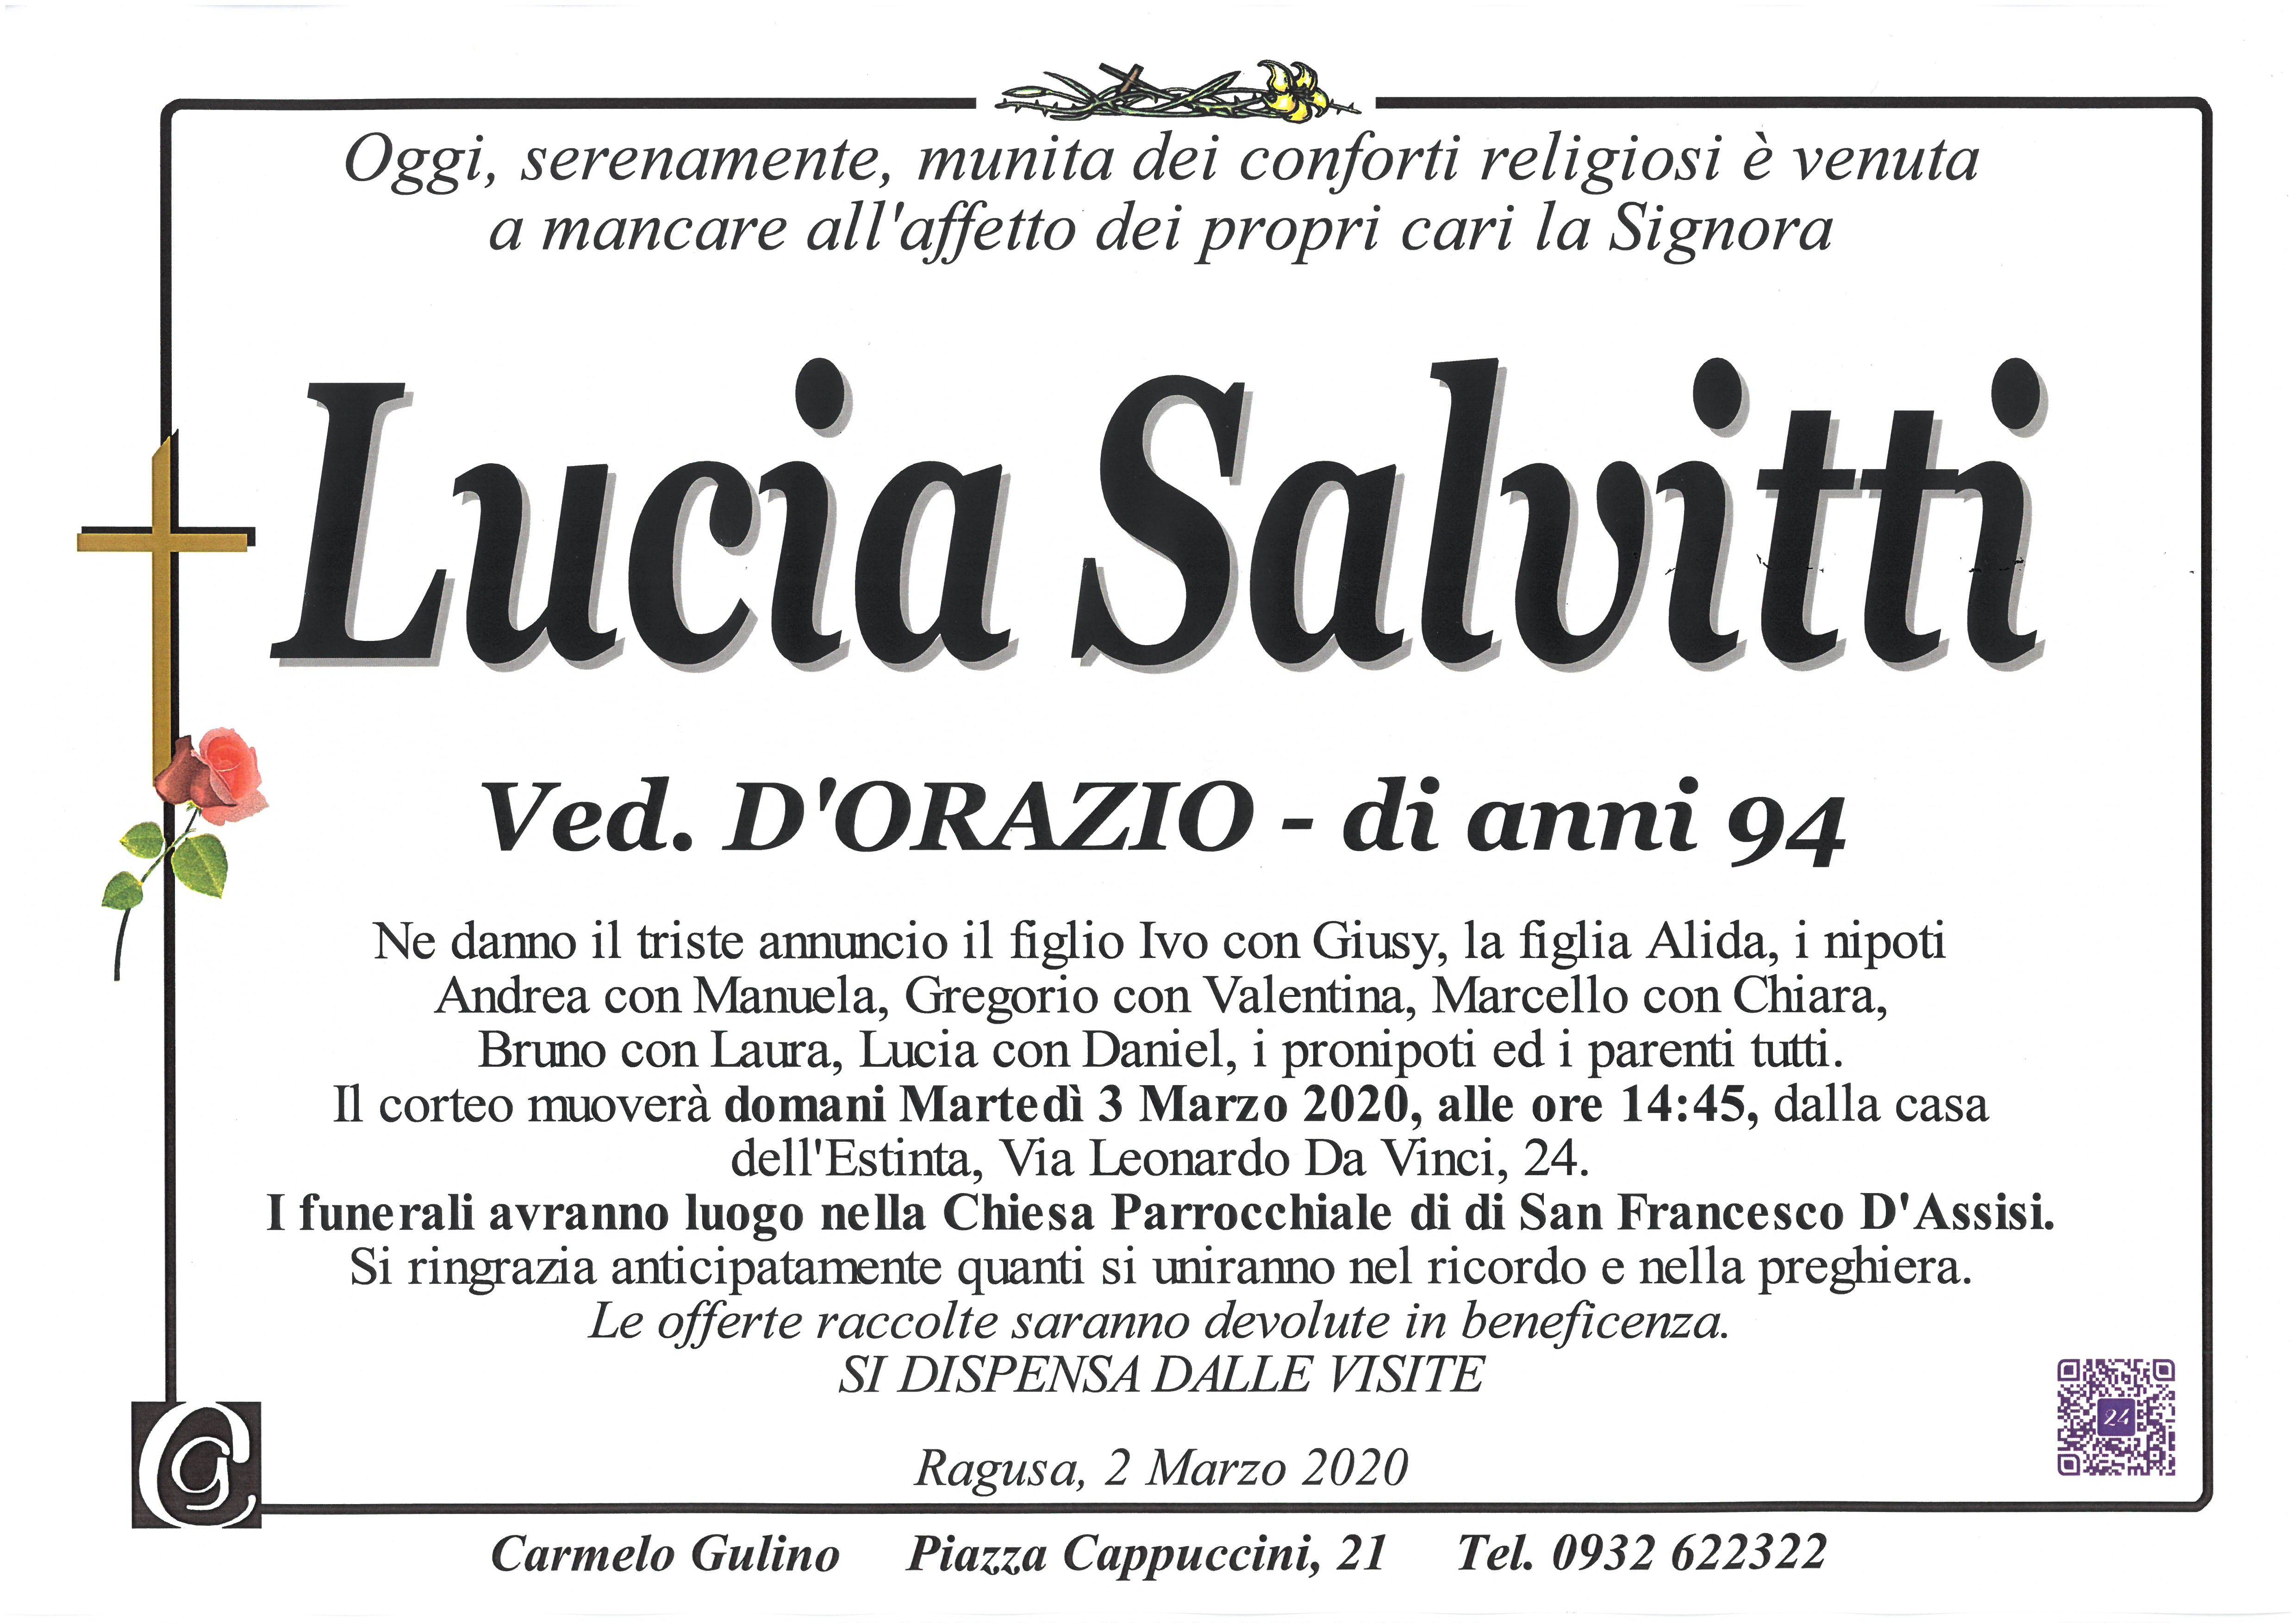 Lucia Salvitti